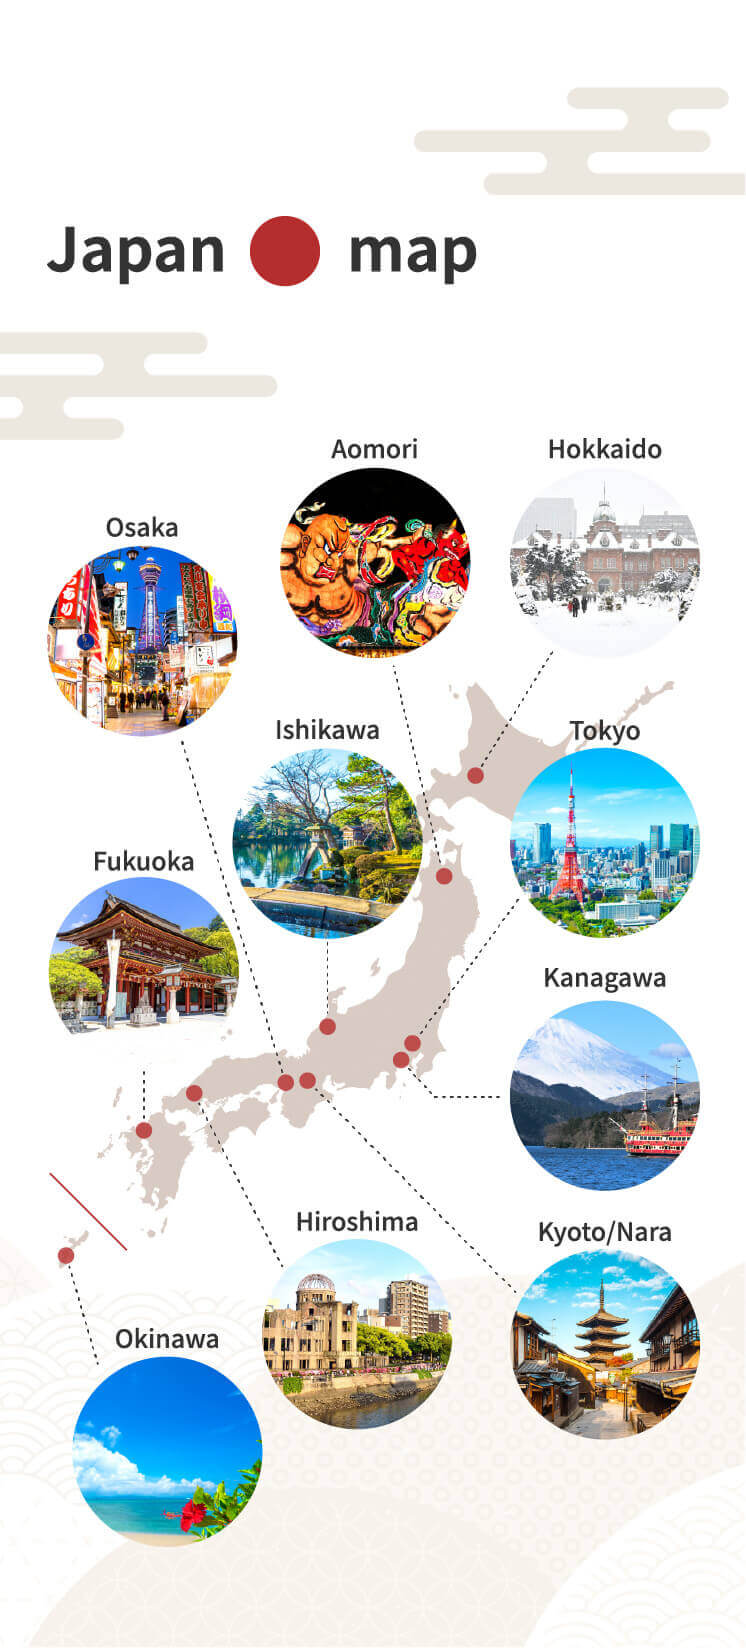 Japan Map /Tokyo, Osaka, Kyoto, Nara, Fukuoka, Okinawa, Hokkaido, Aomori, Kanagawa, Hiroshima, Ishikawa